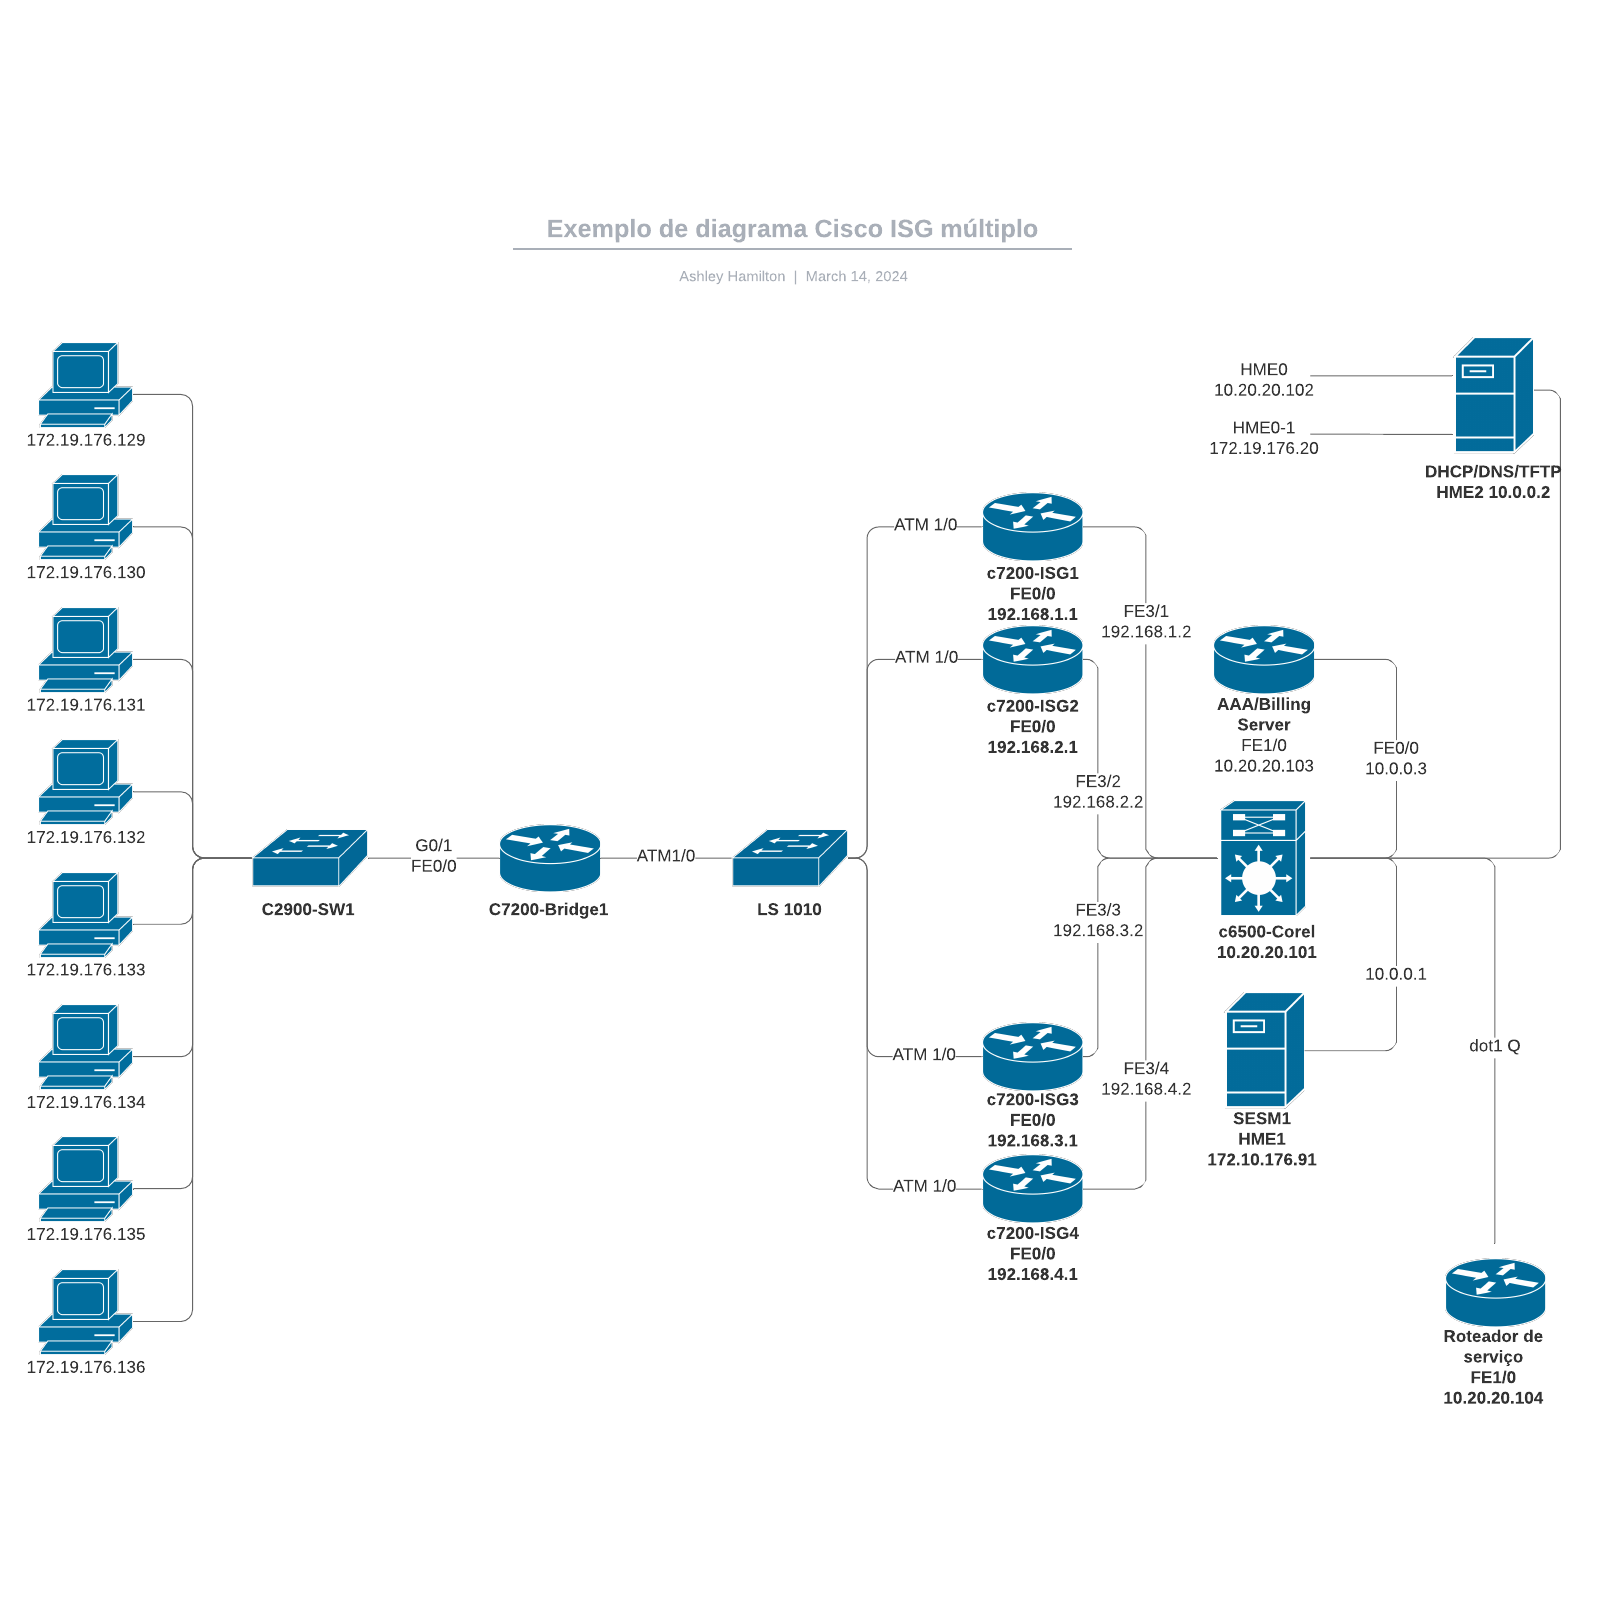 Exemplo de diagrama Cisco ISG múltiplo example